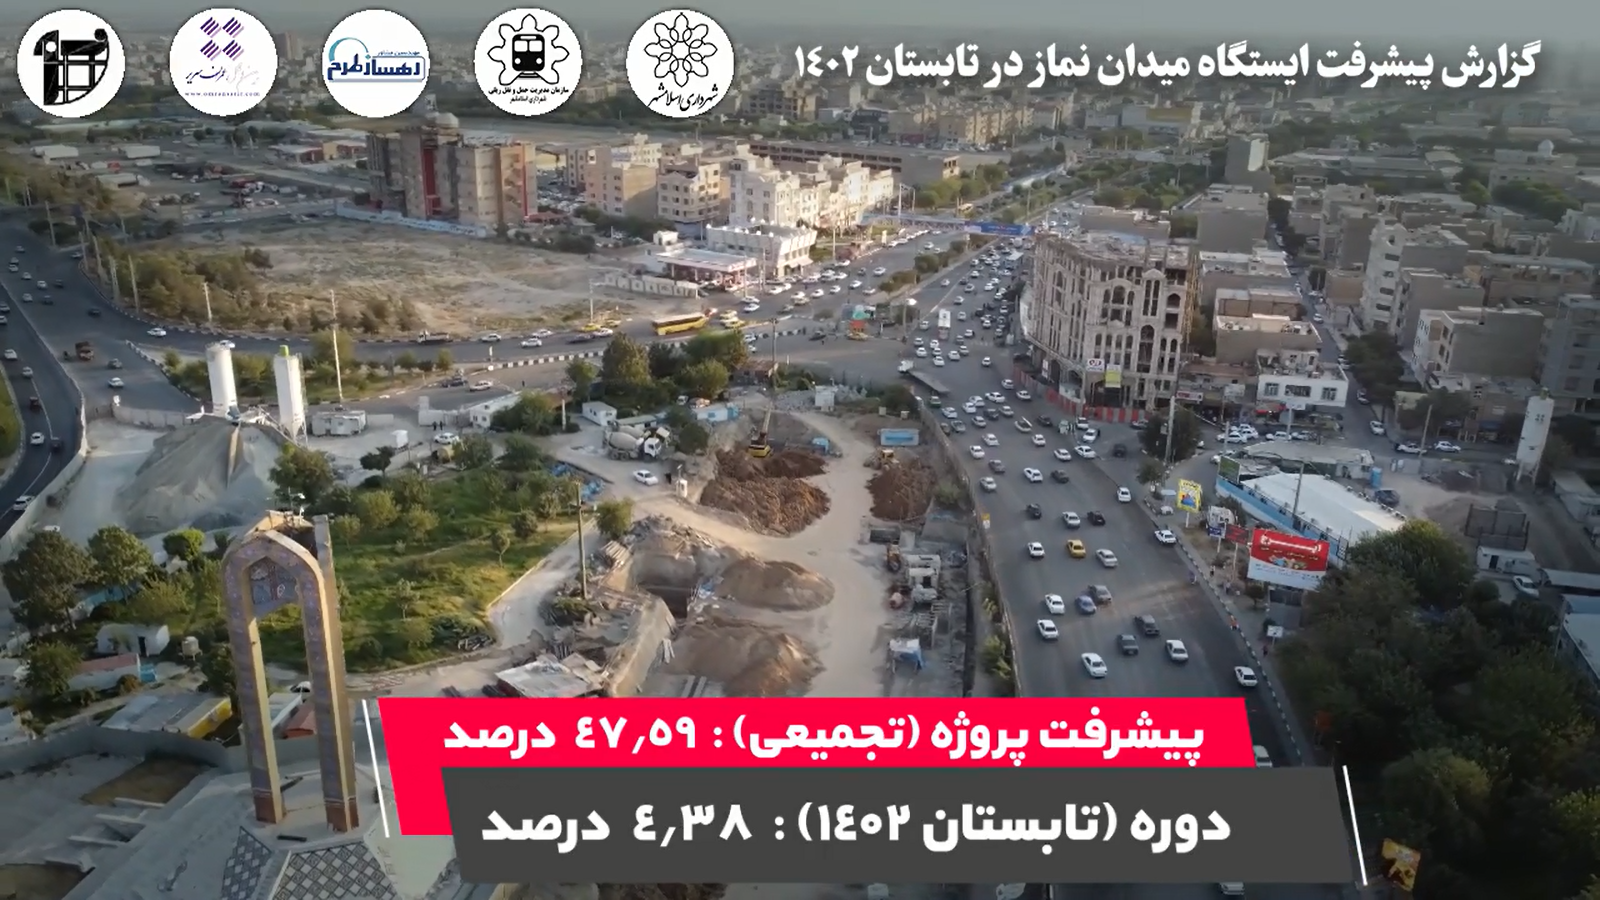 گزارش فصلی پیشرفت پروژه ایستگاه مترو میدان نماز اسلامشهر :